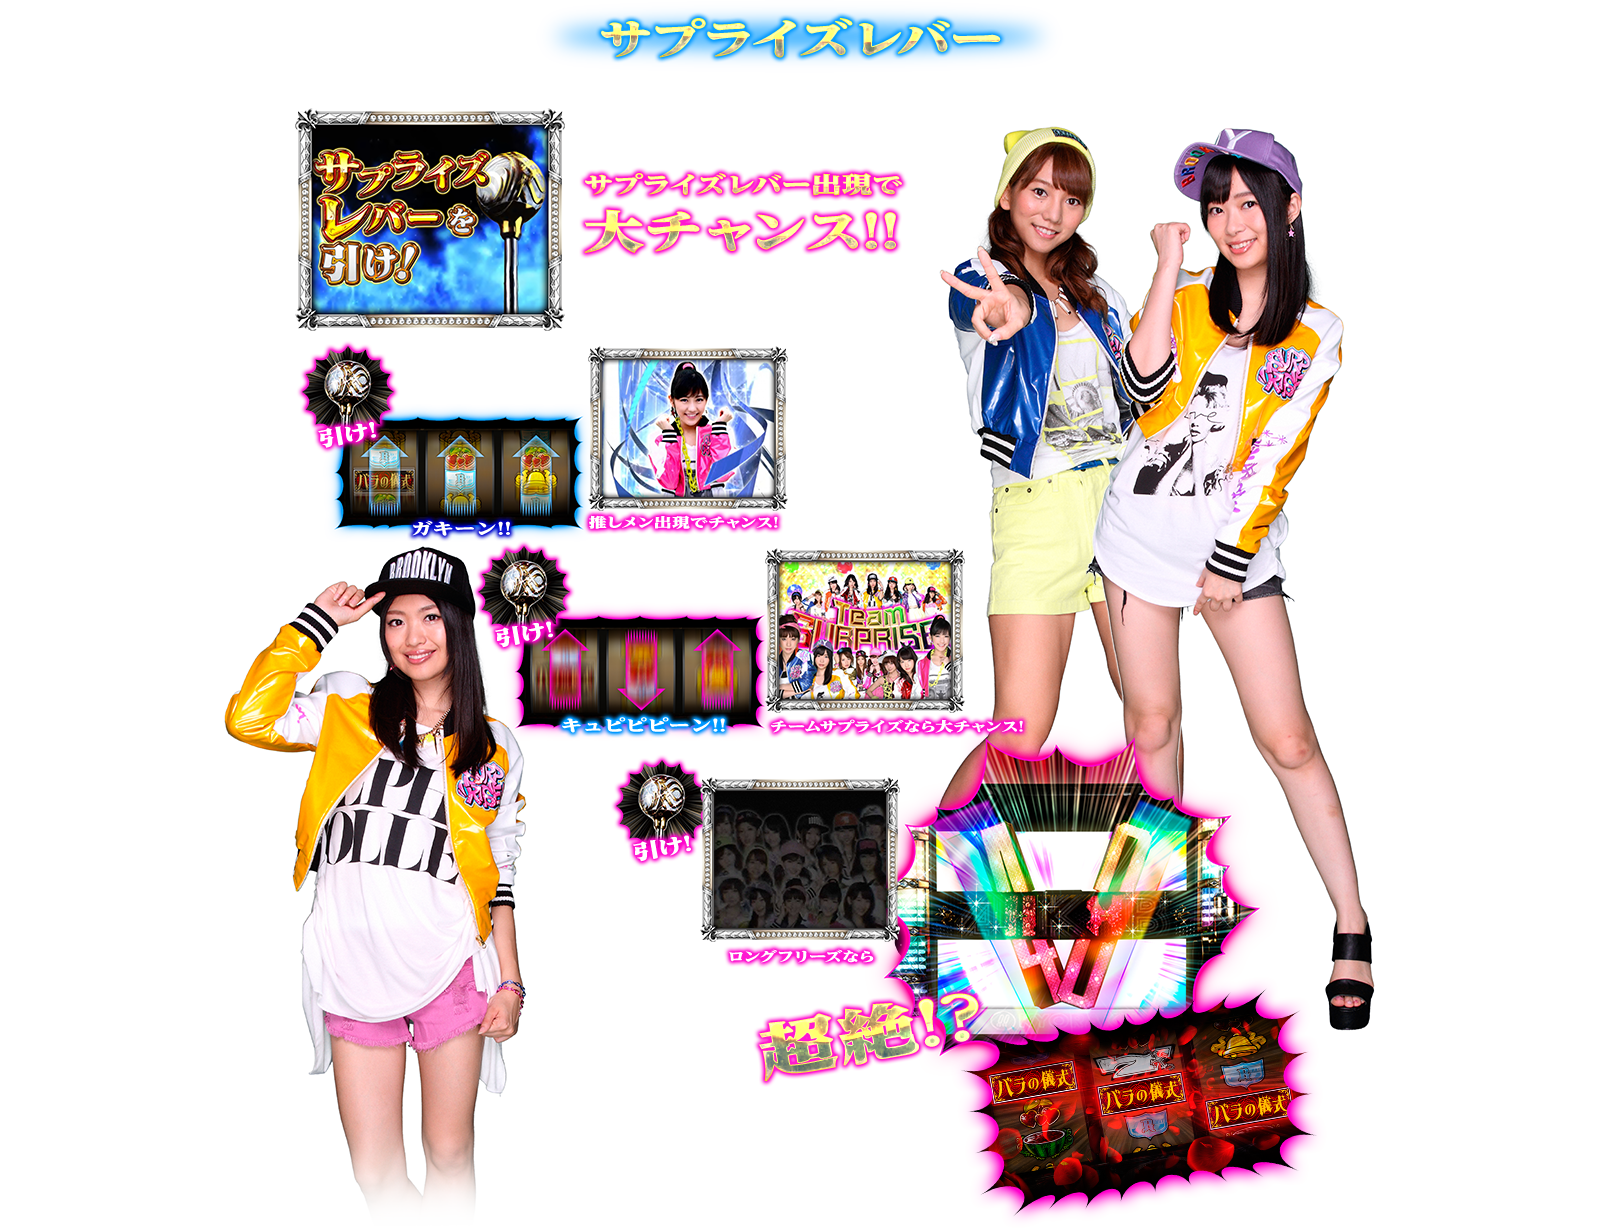 ぱちスロAKB48 バラの儀式の演出紹介。通常時のサプライズレバーです。AKB48ファン、スロット初心者、ヘビーユーザーまで誰もが楽しめるDDスペックで登場!!